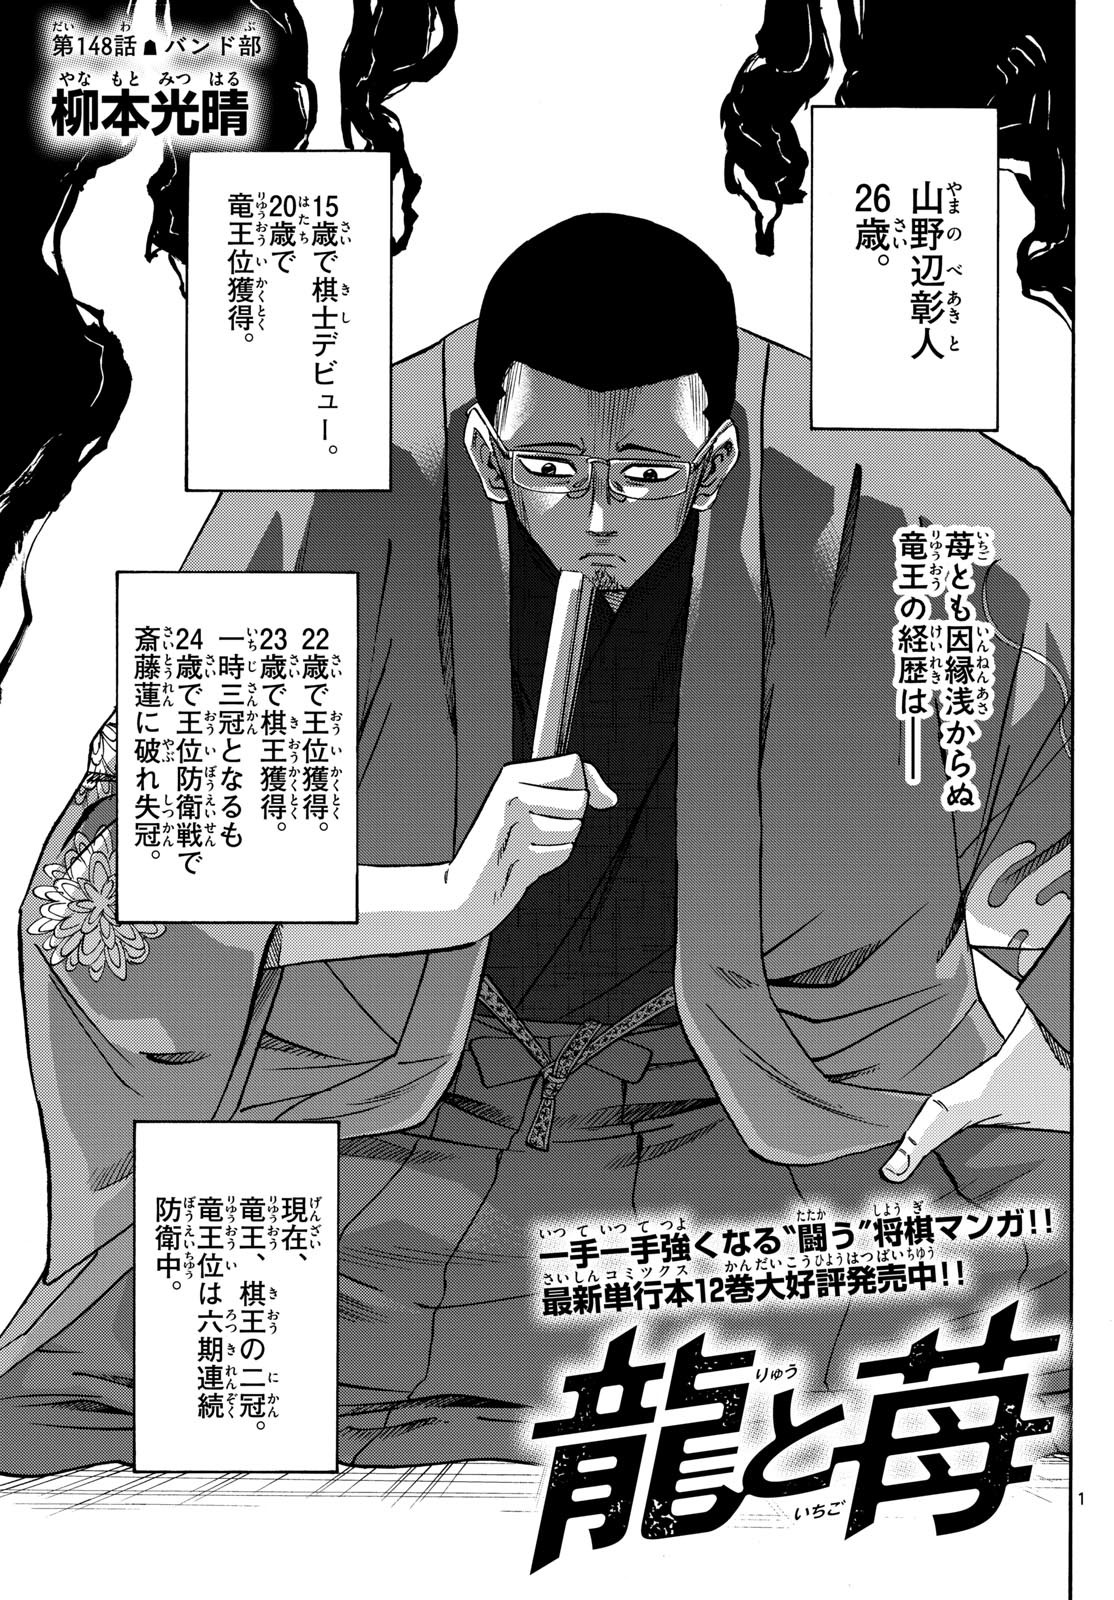 Ryu-to-Ichigo - Chapter 148 - Page 1